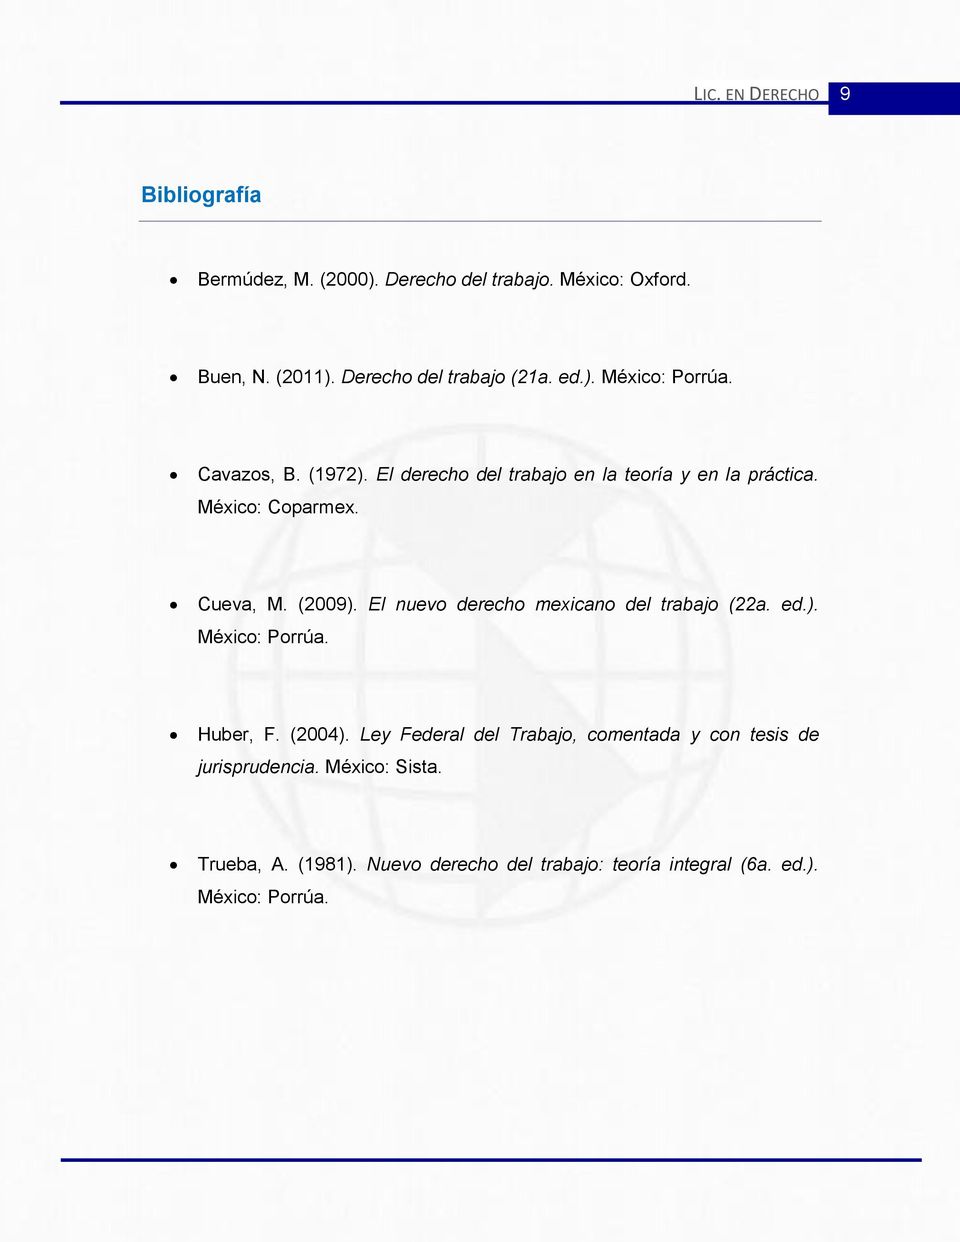 México: Coparmex. Cueva, M. (2009). El nuevo derecho mexicano del trabajo (22a. ed.). México: Porrúa. Huber, F. (2004).